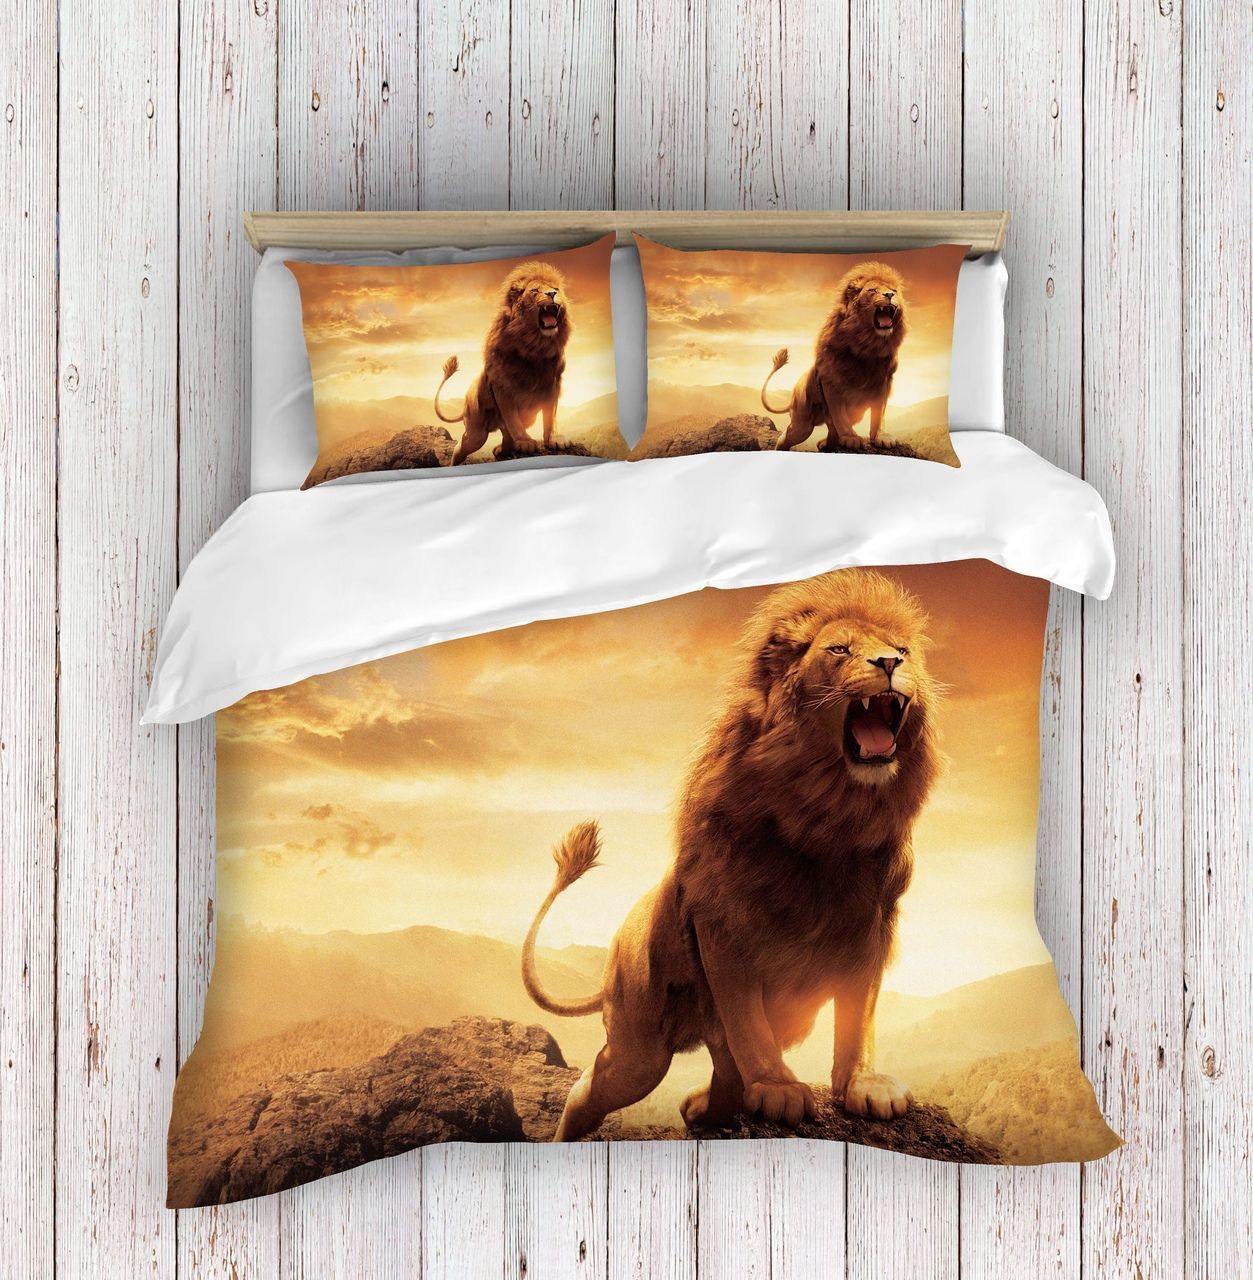 Lion Roaring Bedding Set Bed Sheets Spread Comforter Duvet Cover Bedding Sets